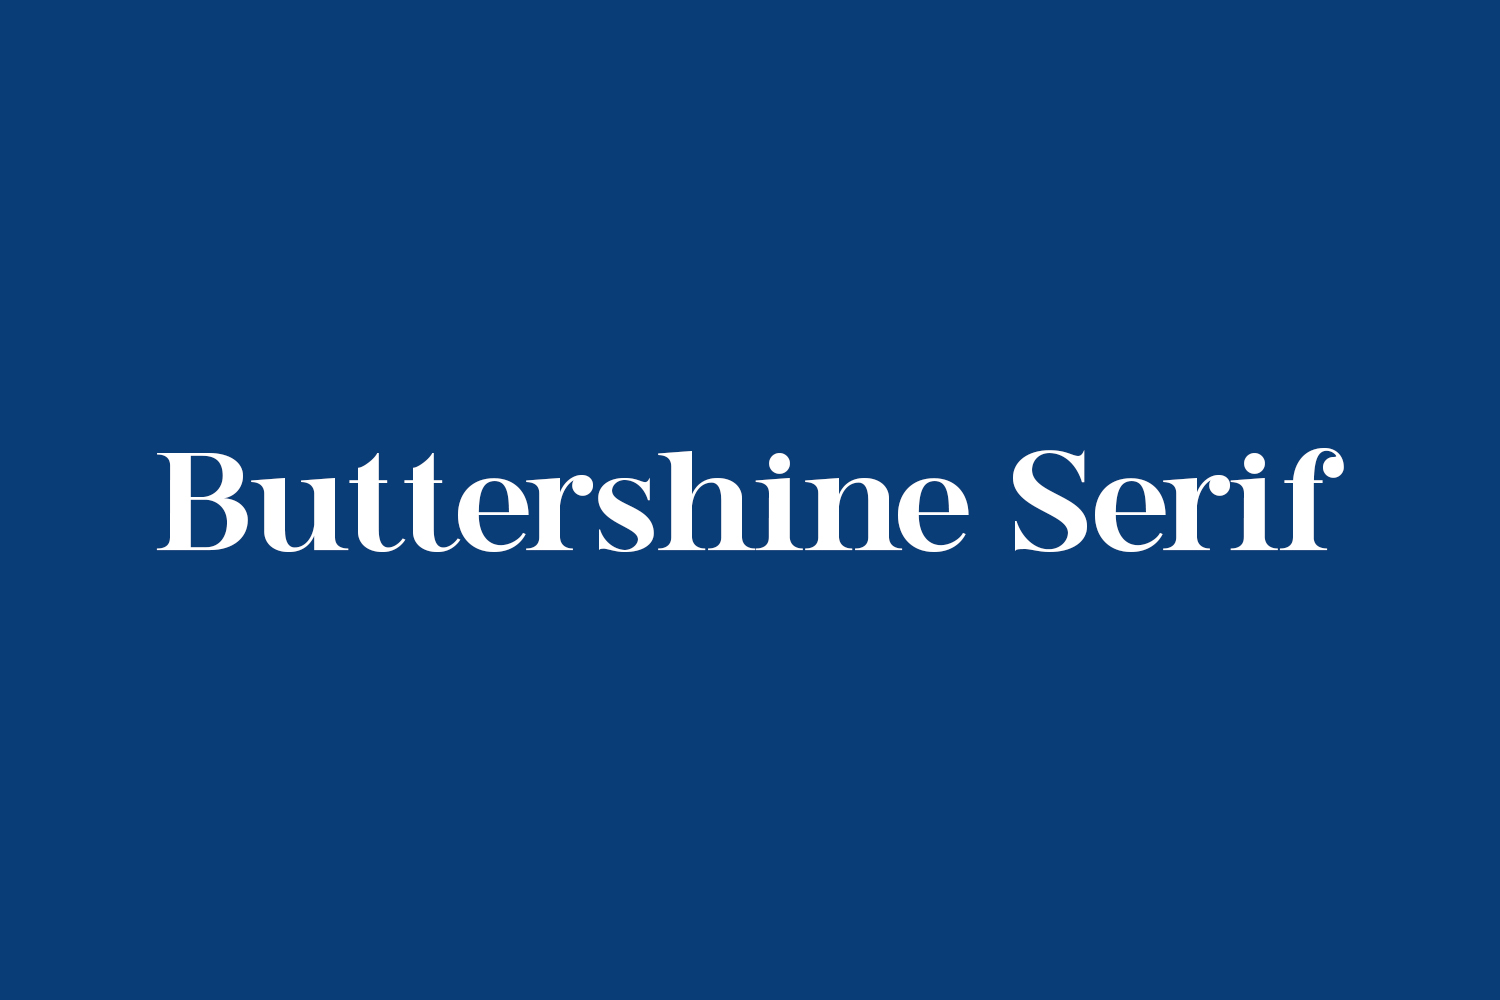 Buttershine Serif Free Font